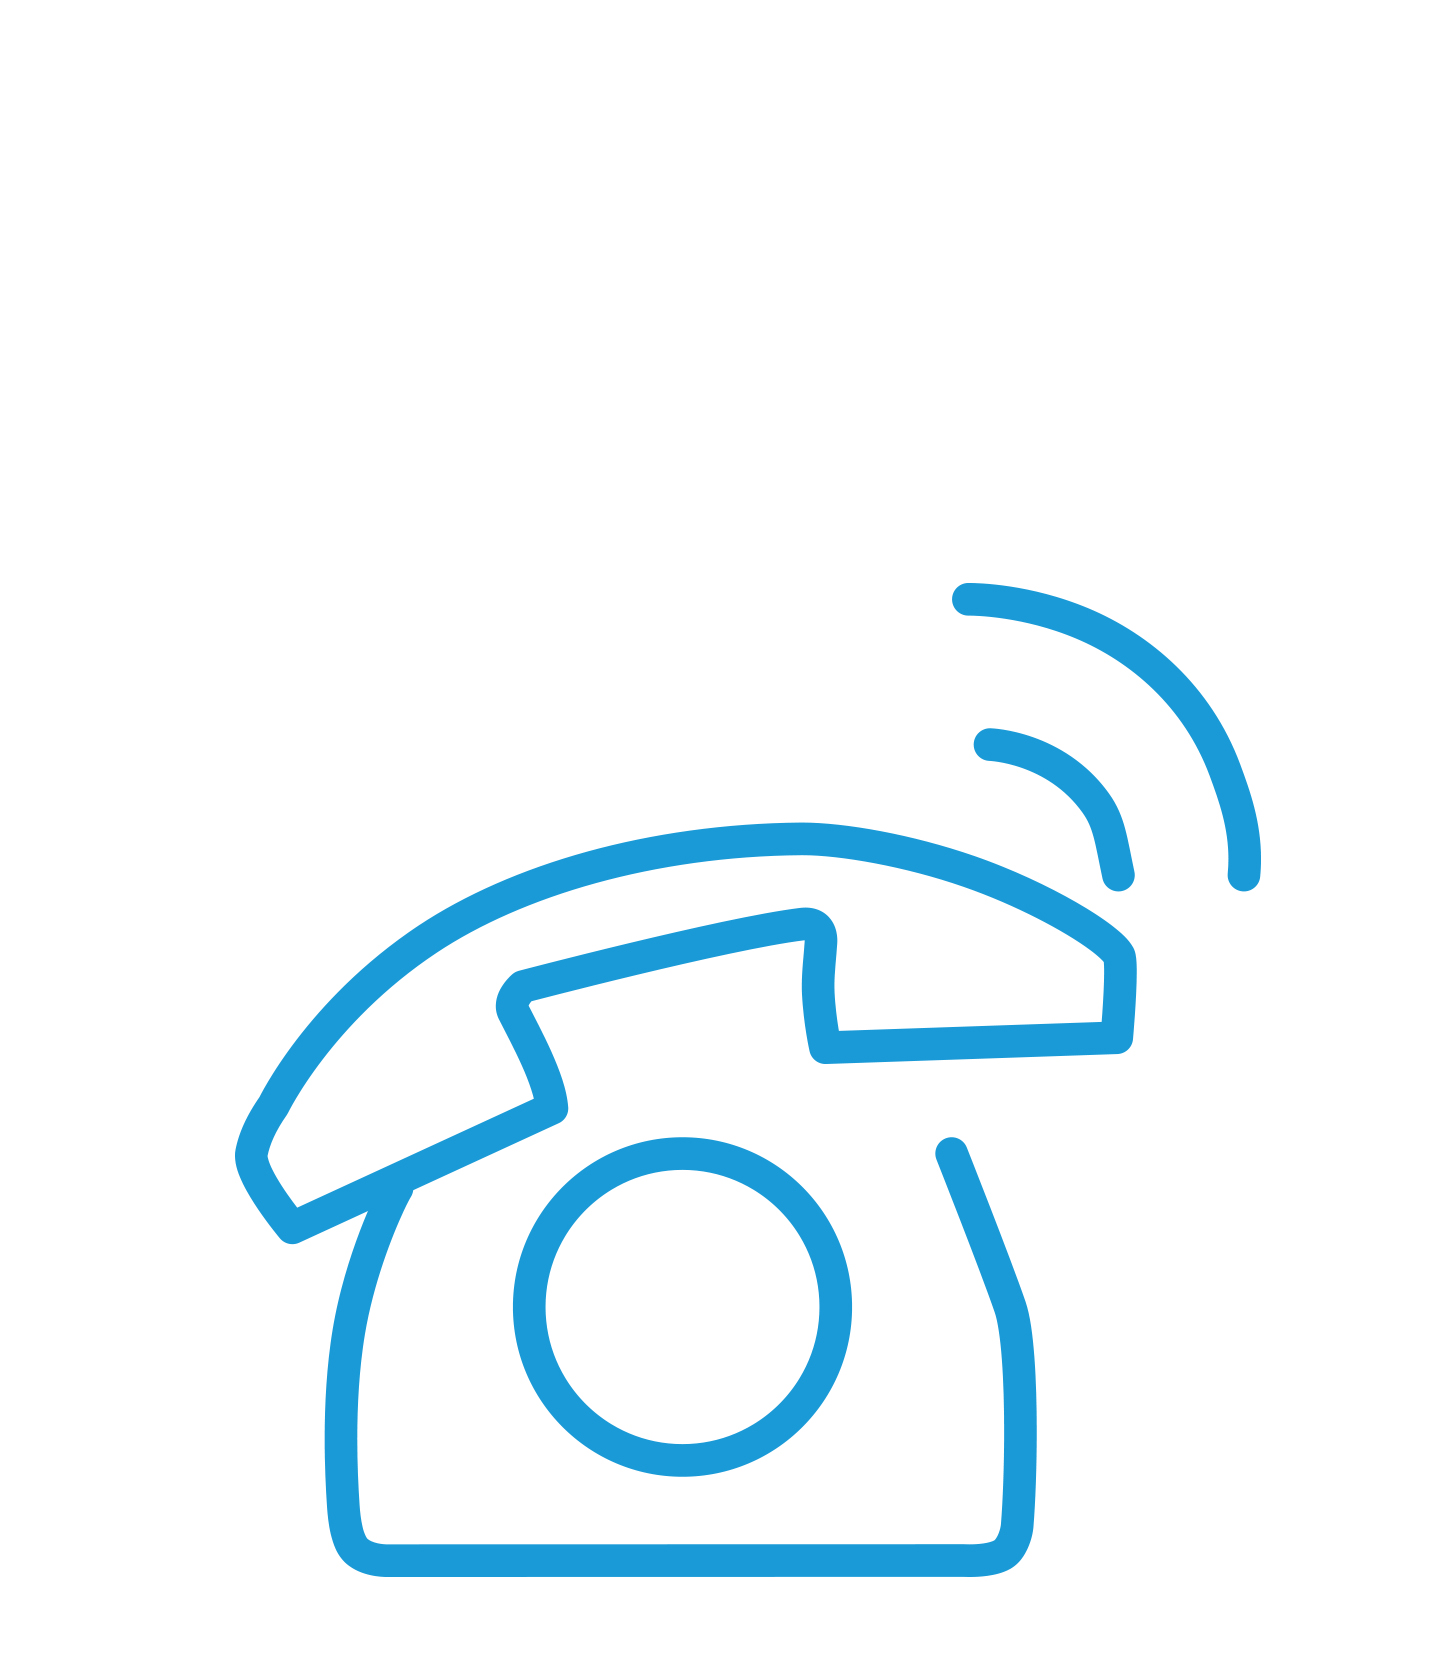 Blue ringing phone symbol.